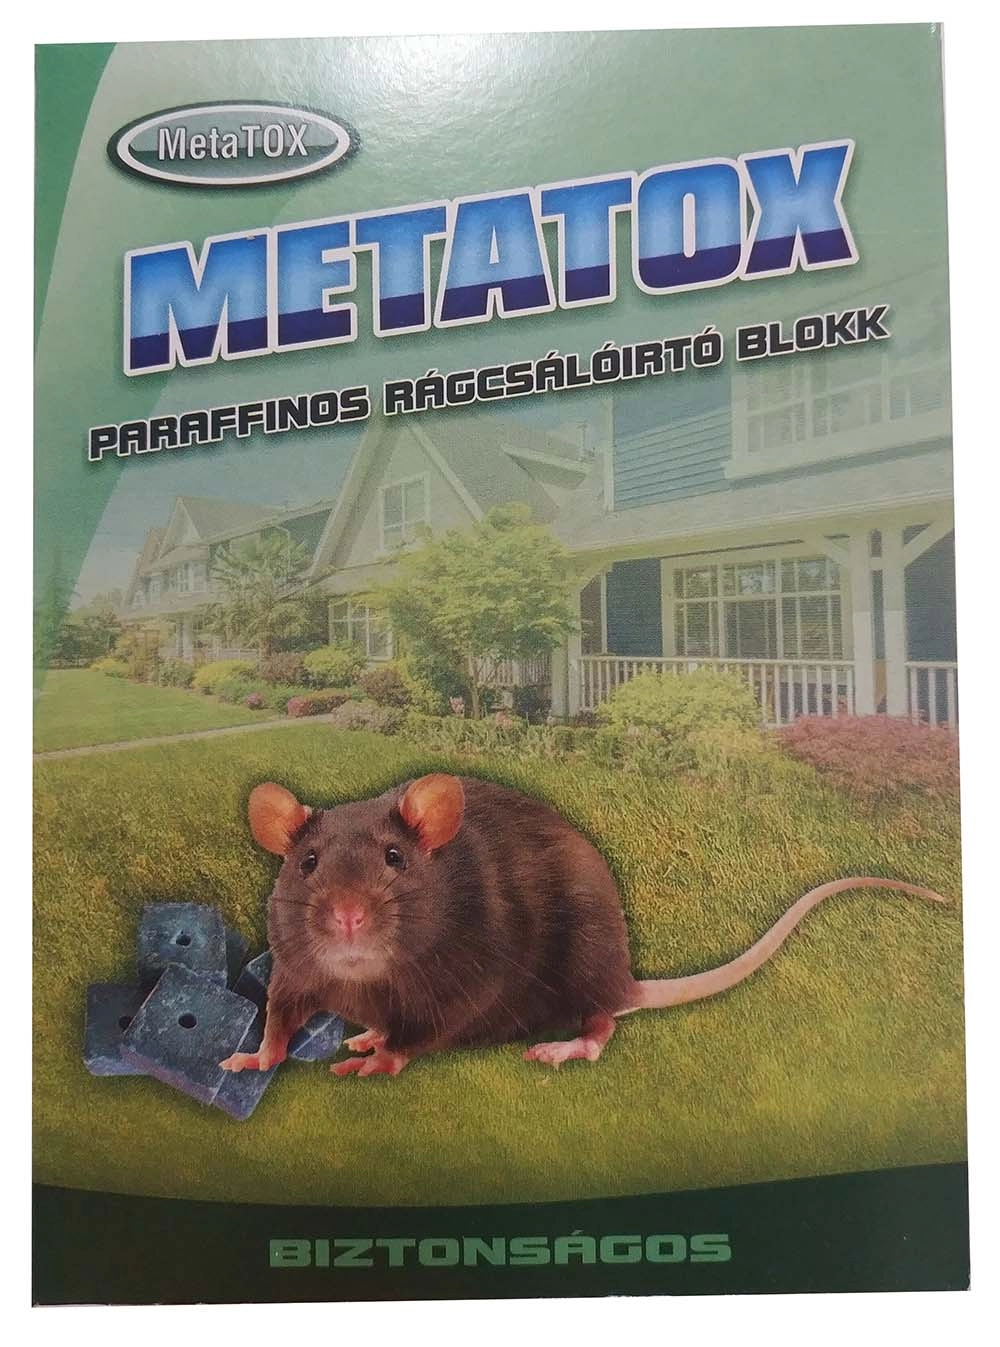 Metatox paraffinos rágcsálóirtó blokk 300g